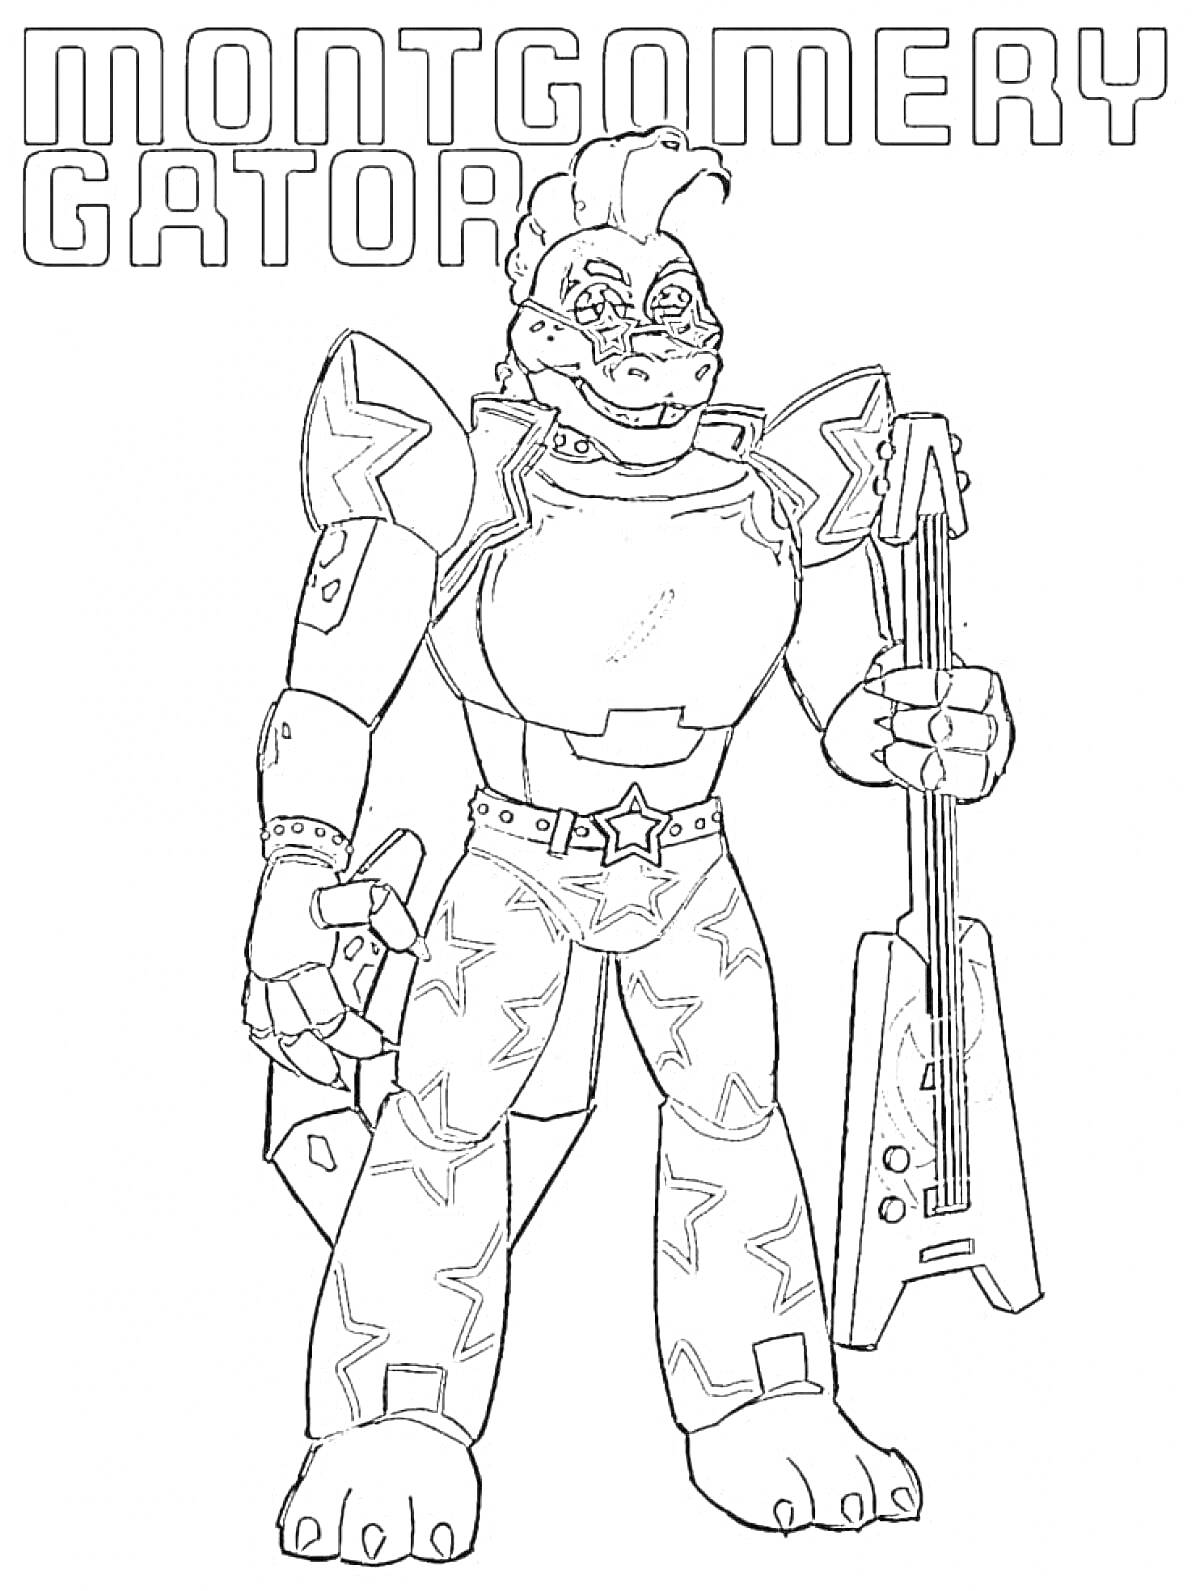 Раскраска Montgomery Gator, аниматроник с гитарой